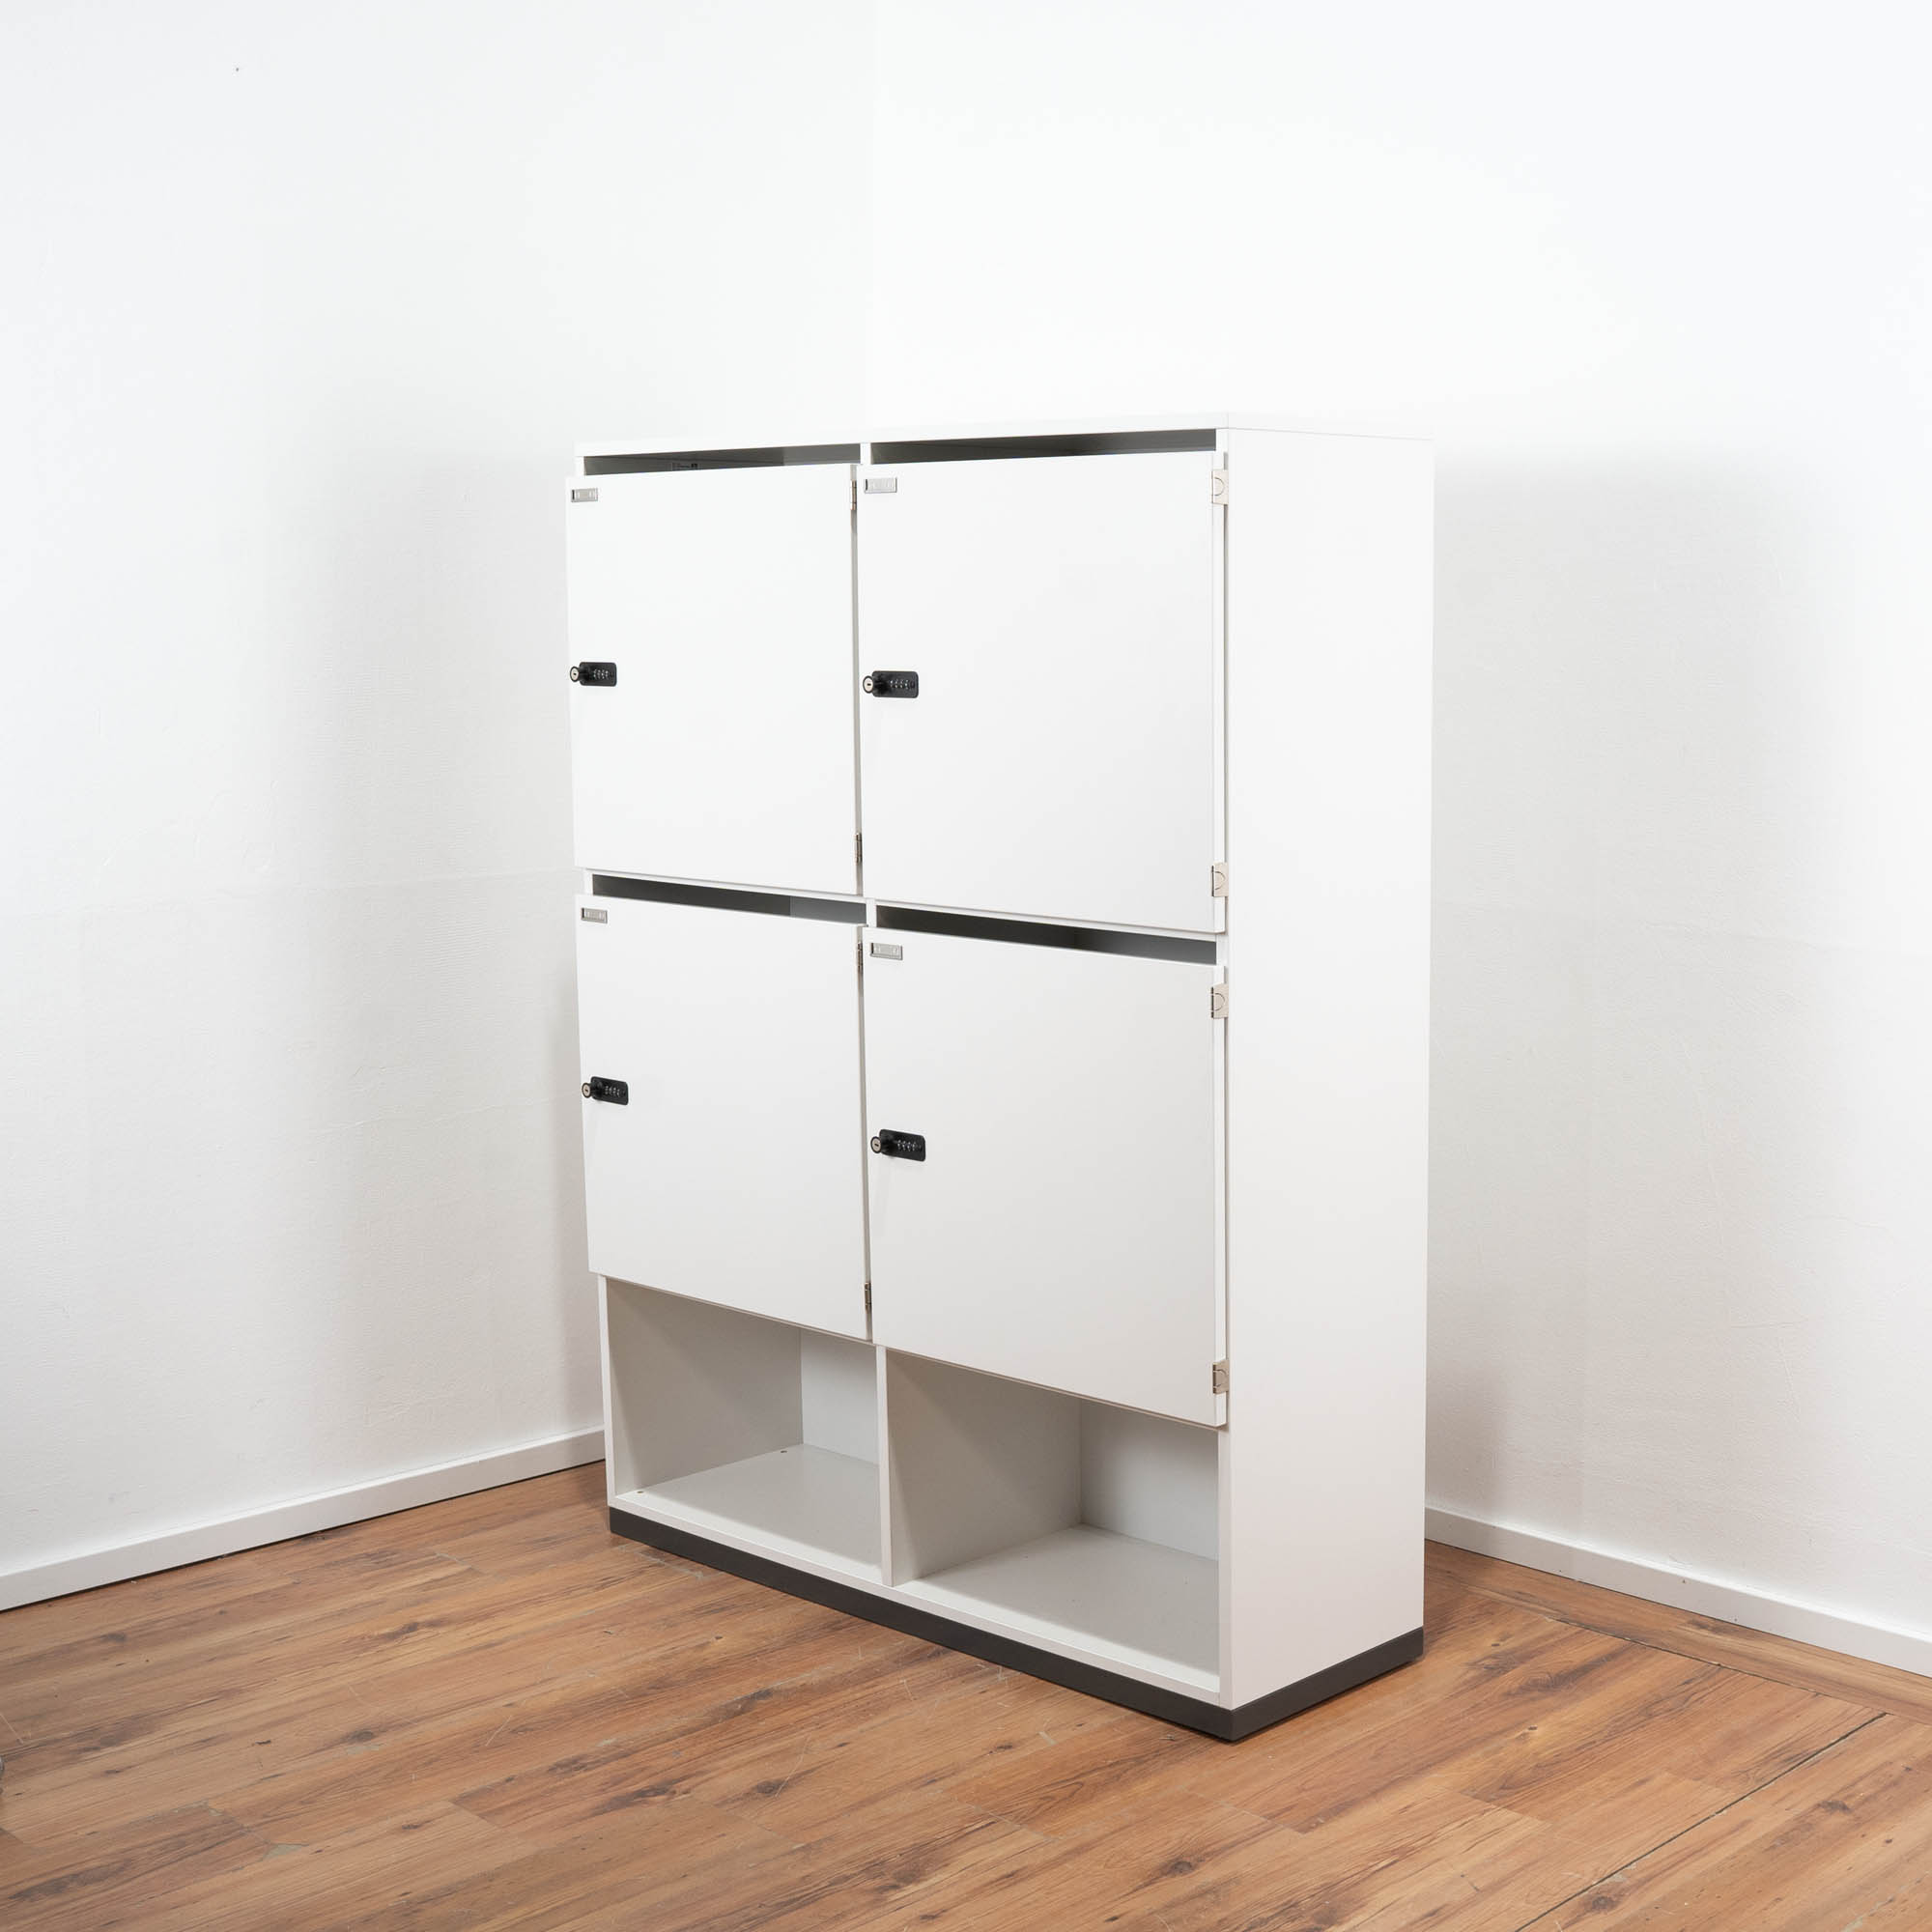 VS Möbel Schließfachschrank weiß 120 x 157 x 40 cm - 4 Türen - 2 Fächer offen - Zahlenschloss